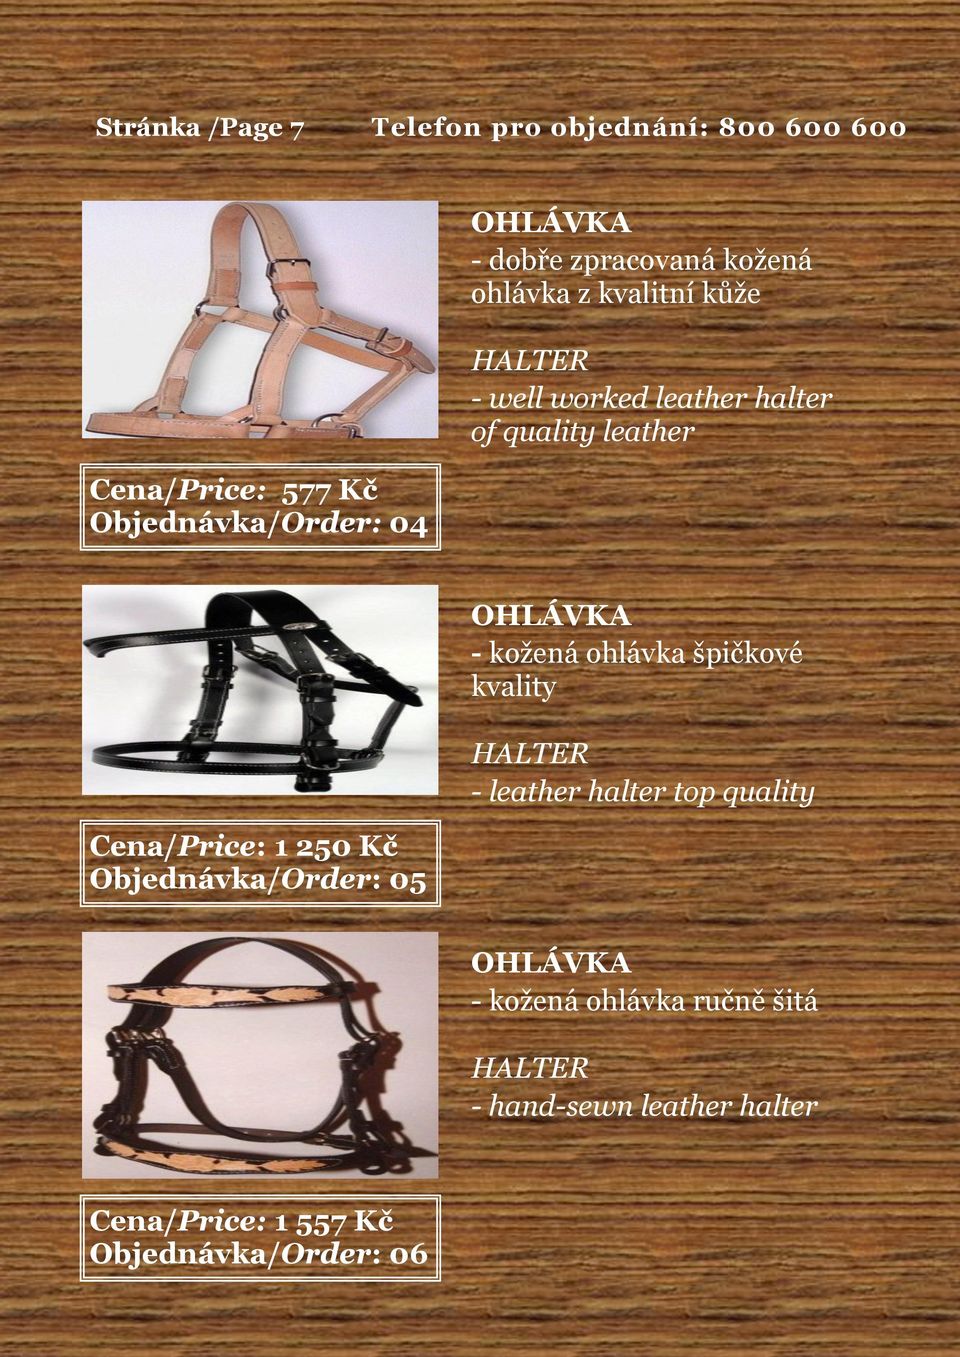 špičkové kvality HALTER - leather halter top quality Cena/Price: 1 250 Kč Objednávka/Order: 05